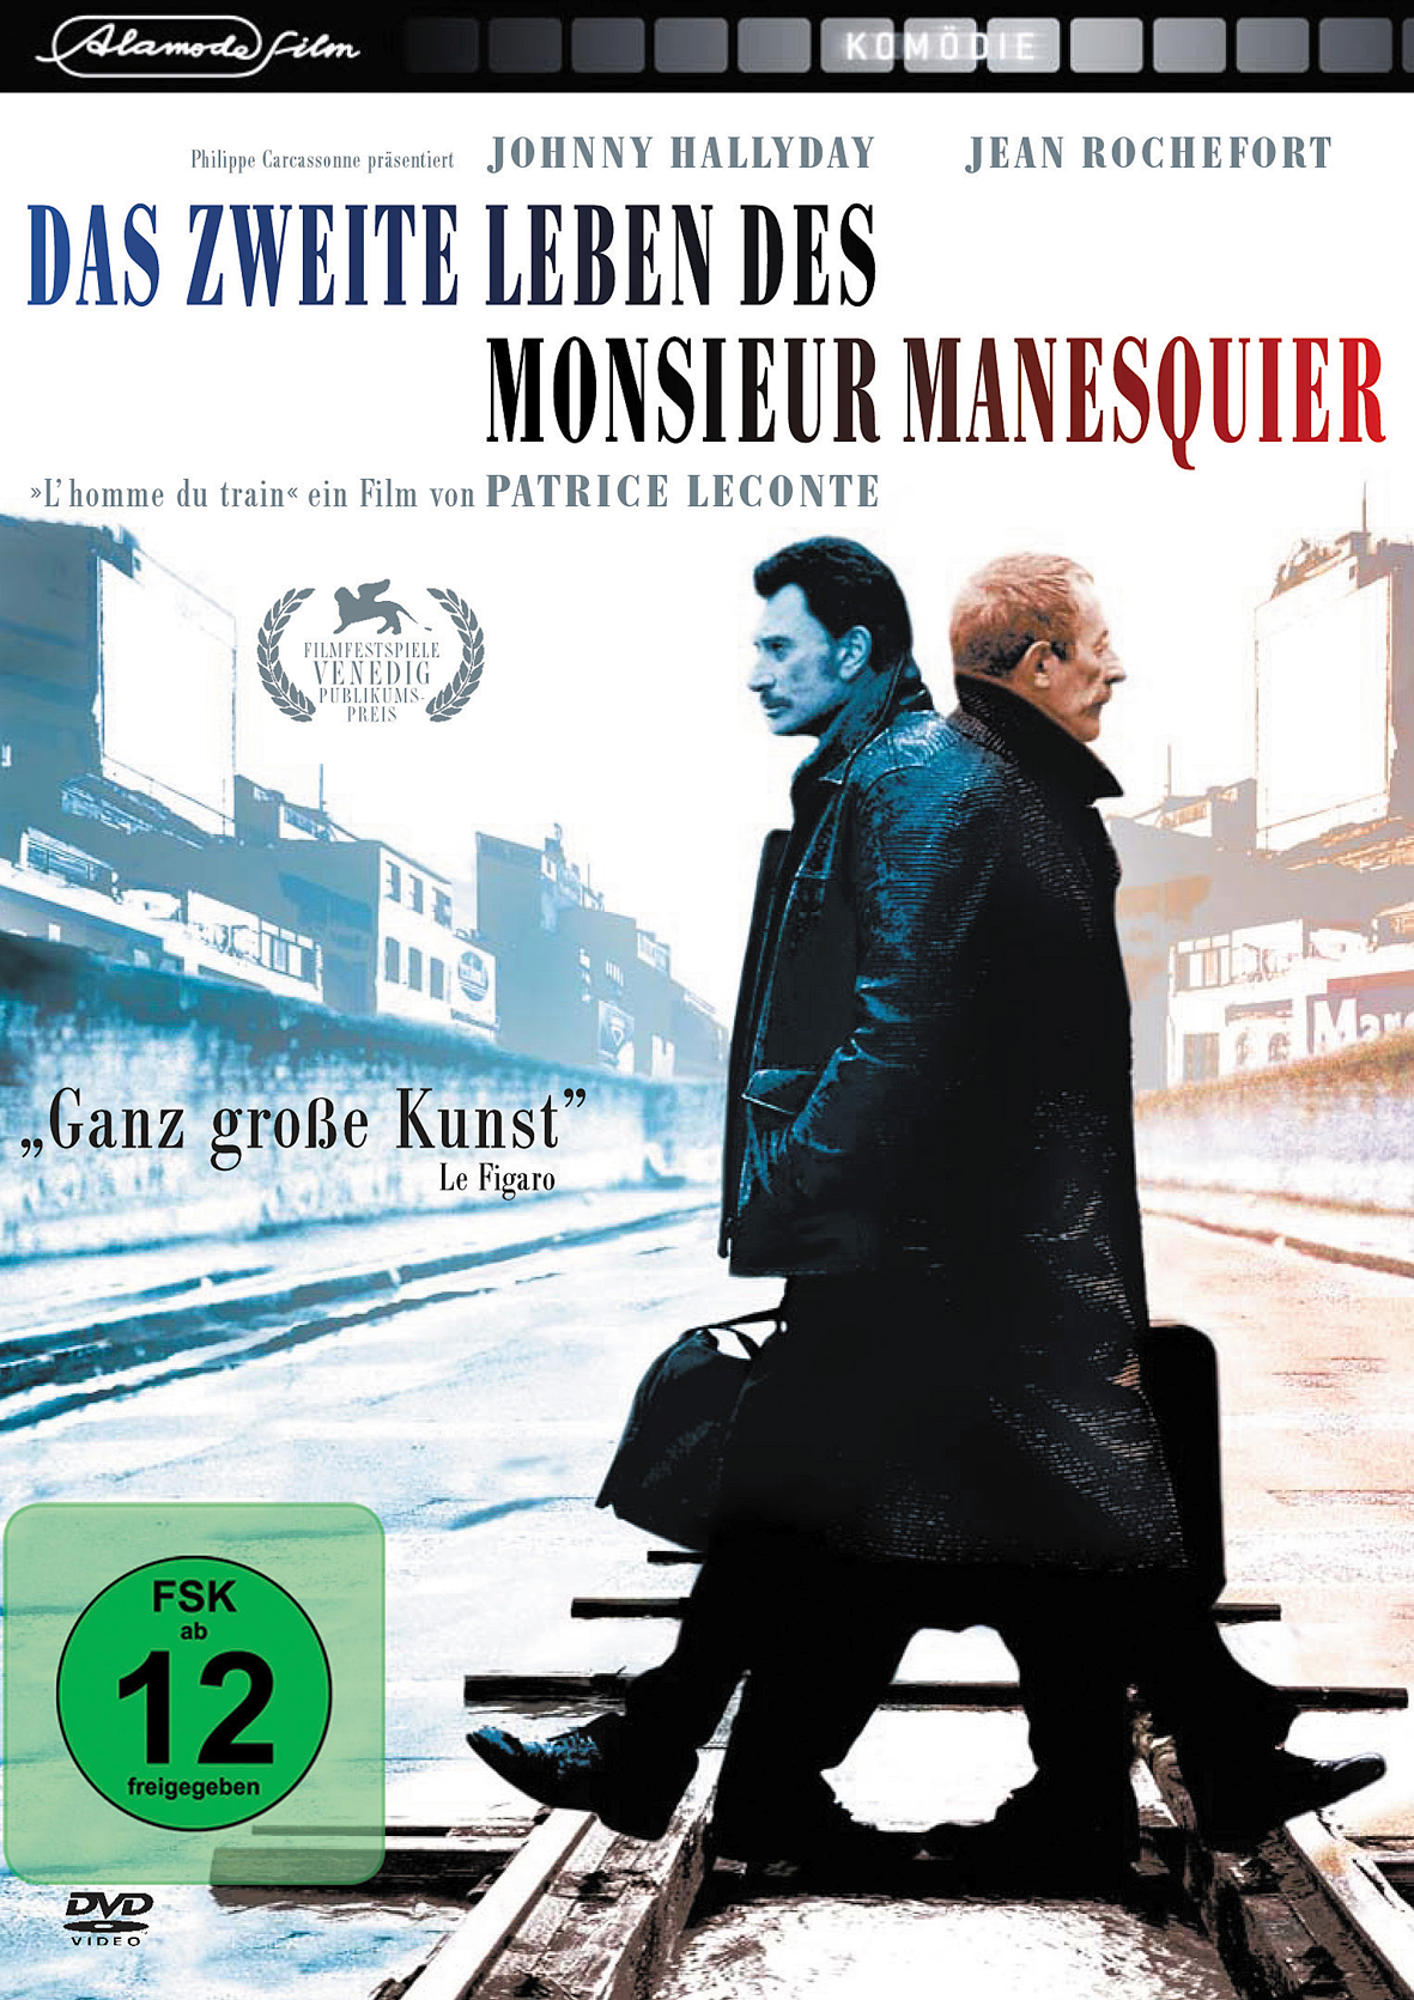 Mannesquier Leben des zweite Das DVD Monsieur